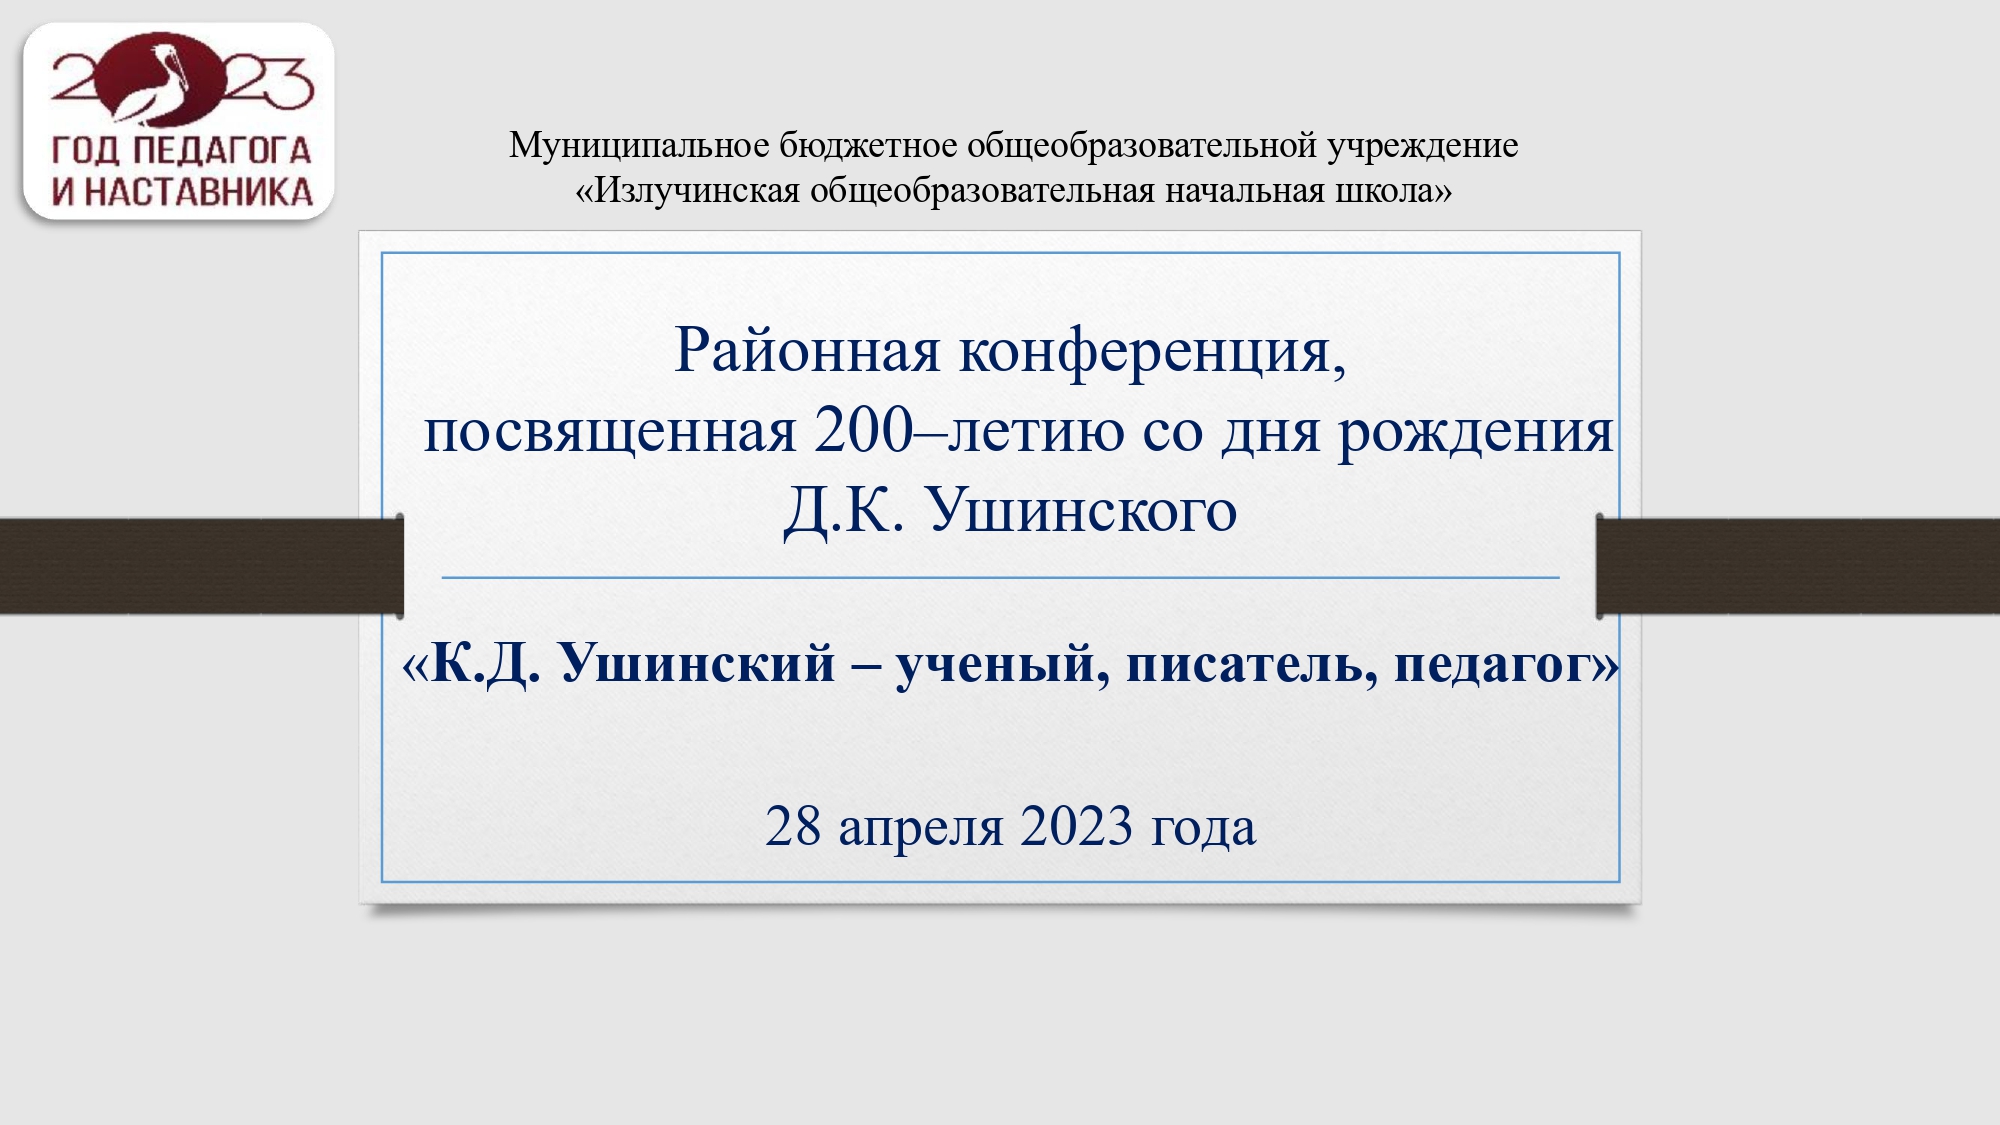 Районная конференция, посвященная 200-летию со дня рождения Д. К. Ушинского.